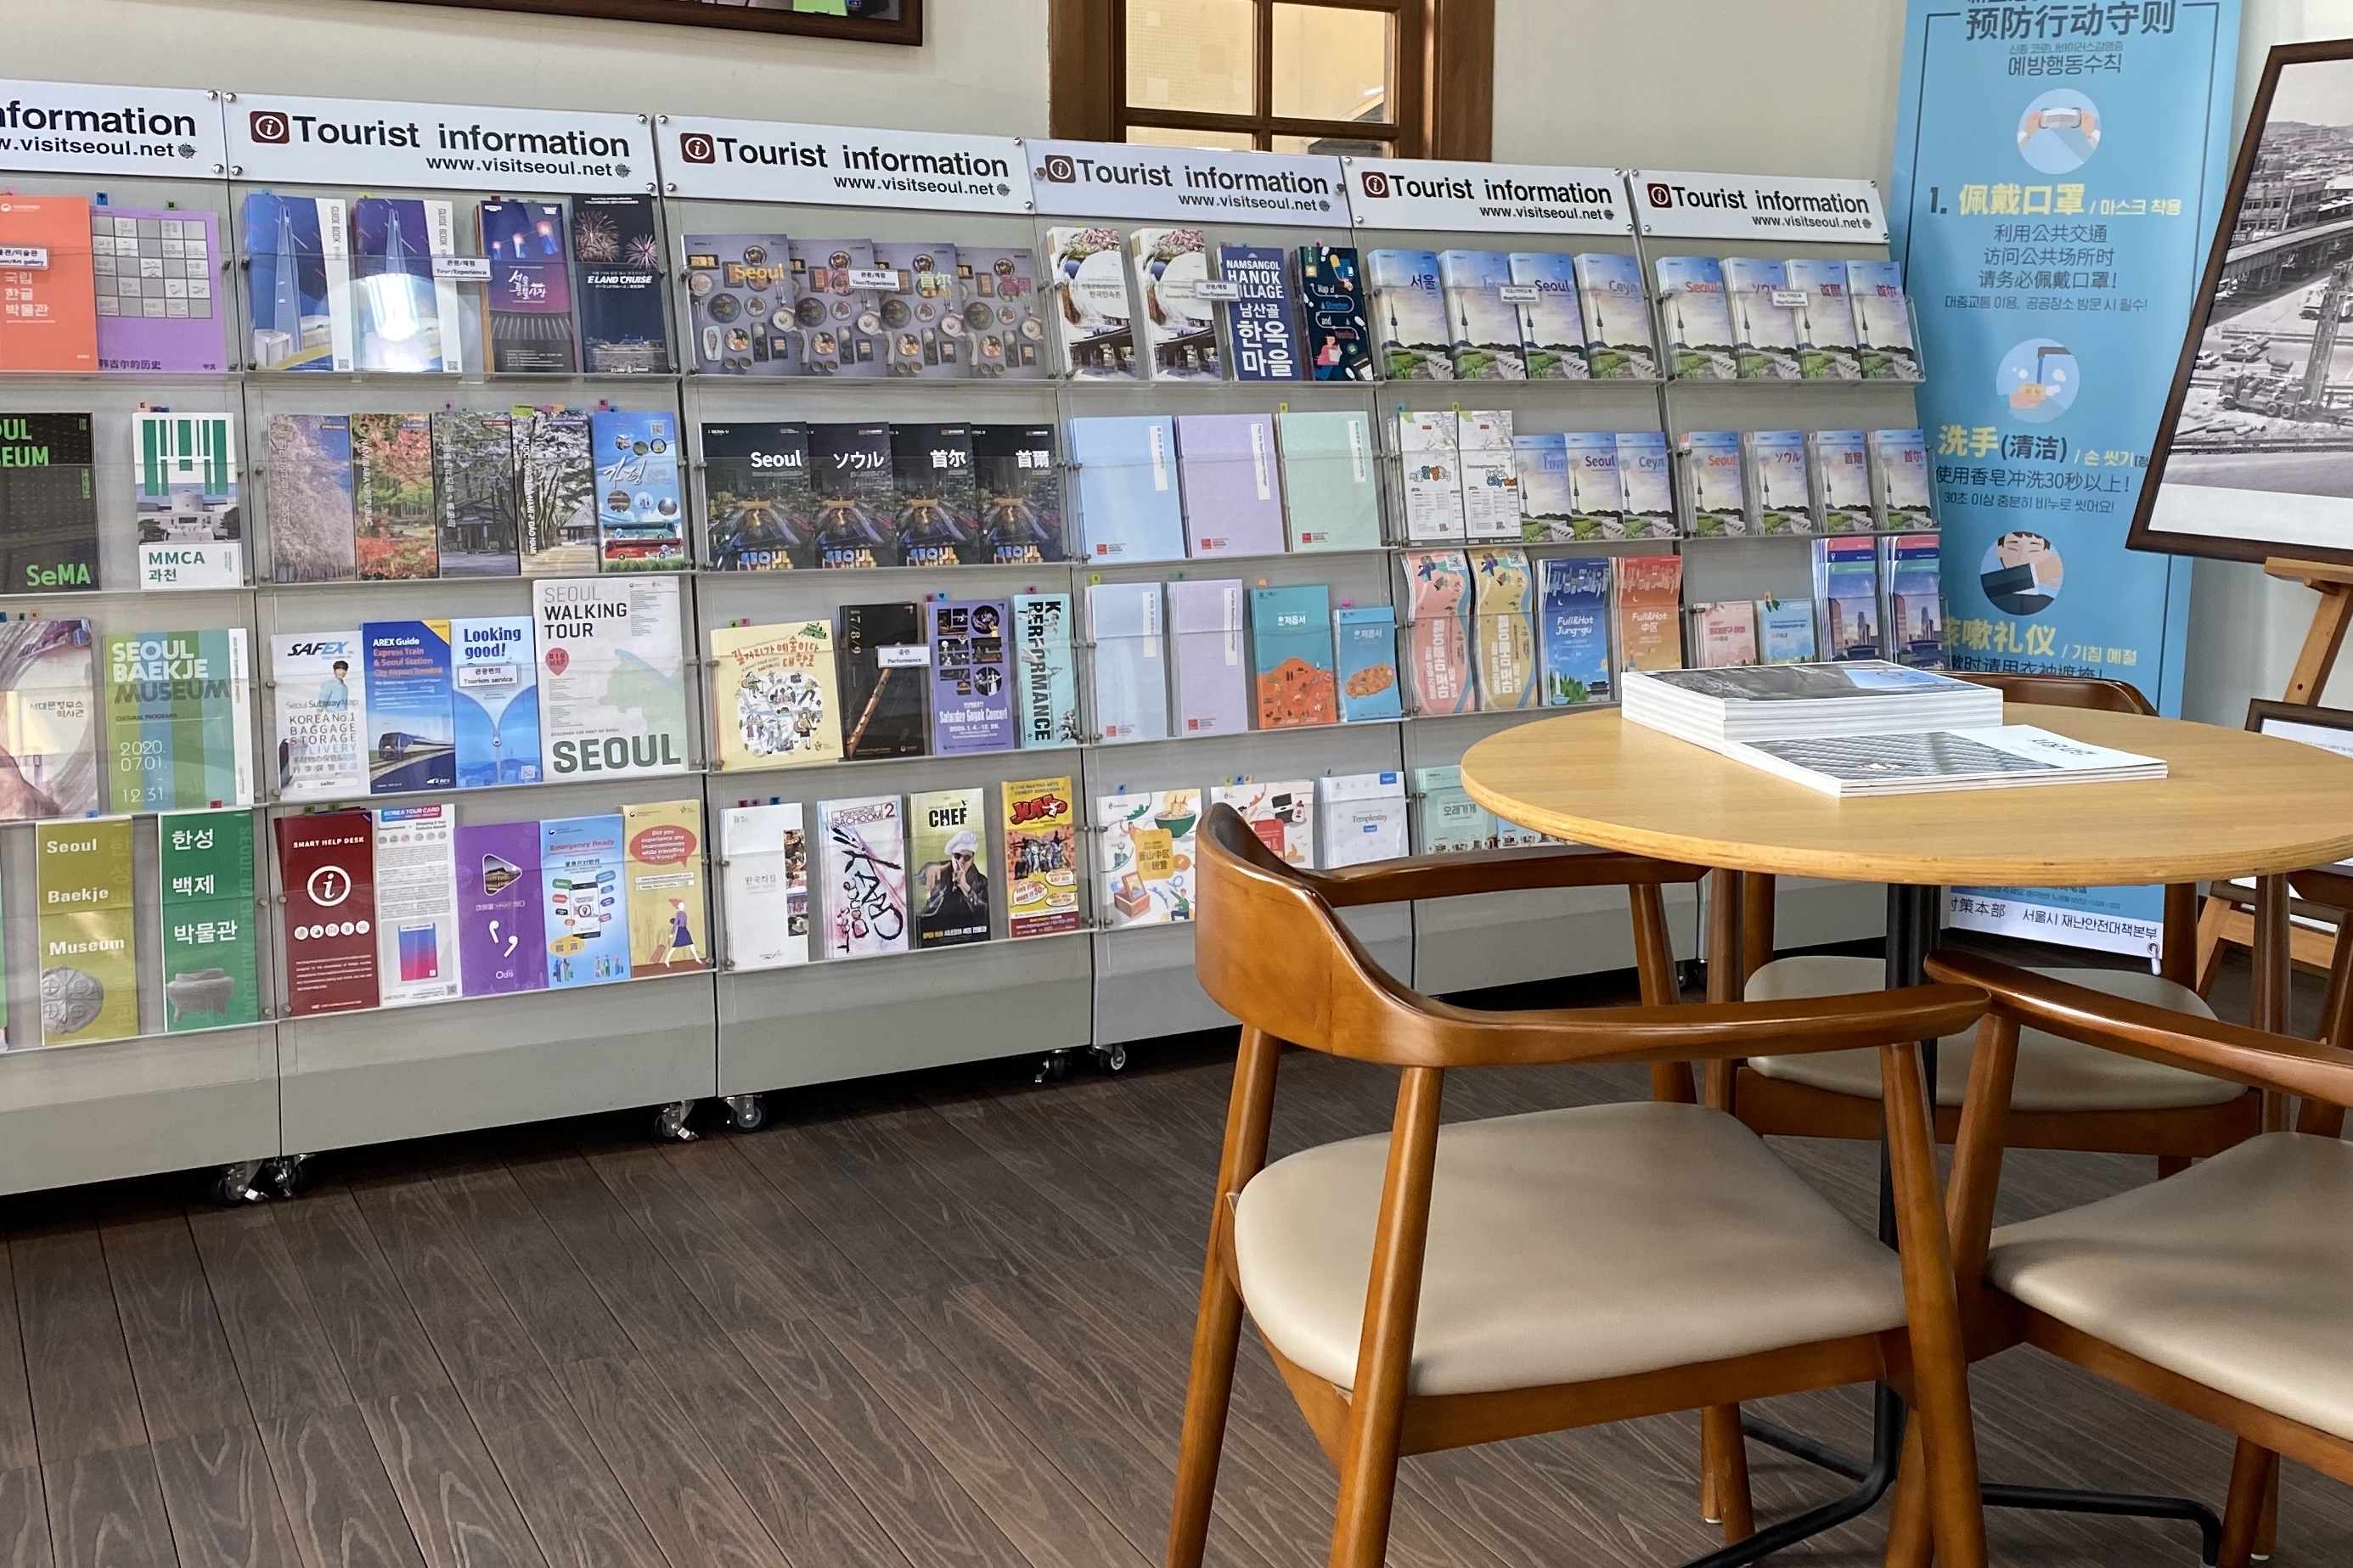 신촌역 관광안내센터2 : 국내여행 관련 다양한 팜플렛 전시된 내부
